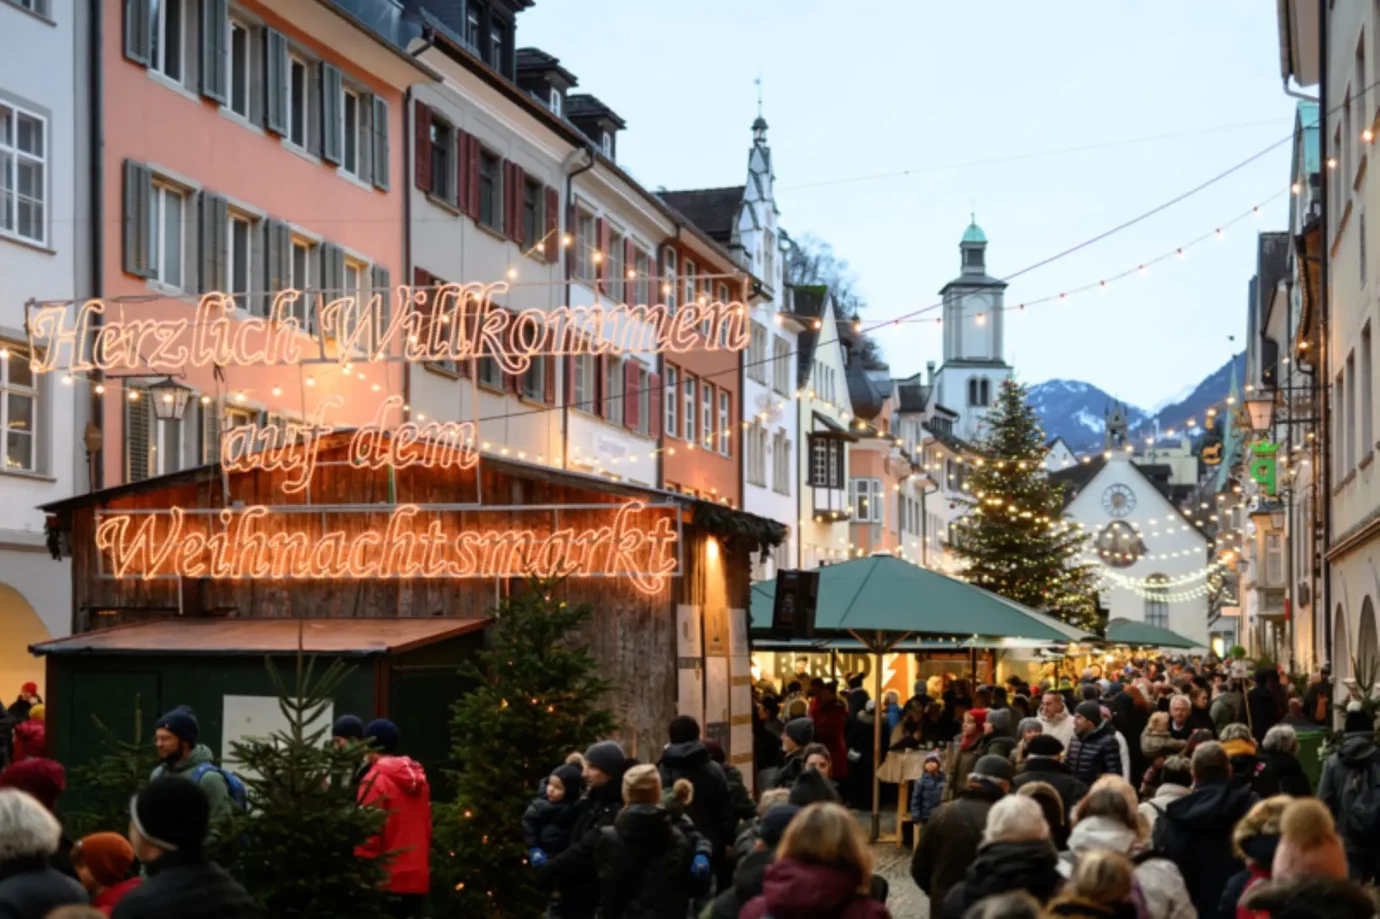 Weihnachtsmarkt in Feldkirch in der Altstadt mit vielen Besuchern.